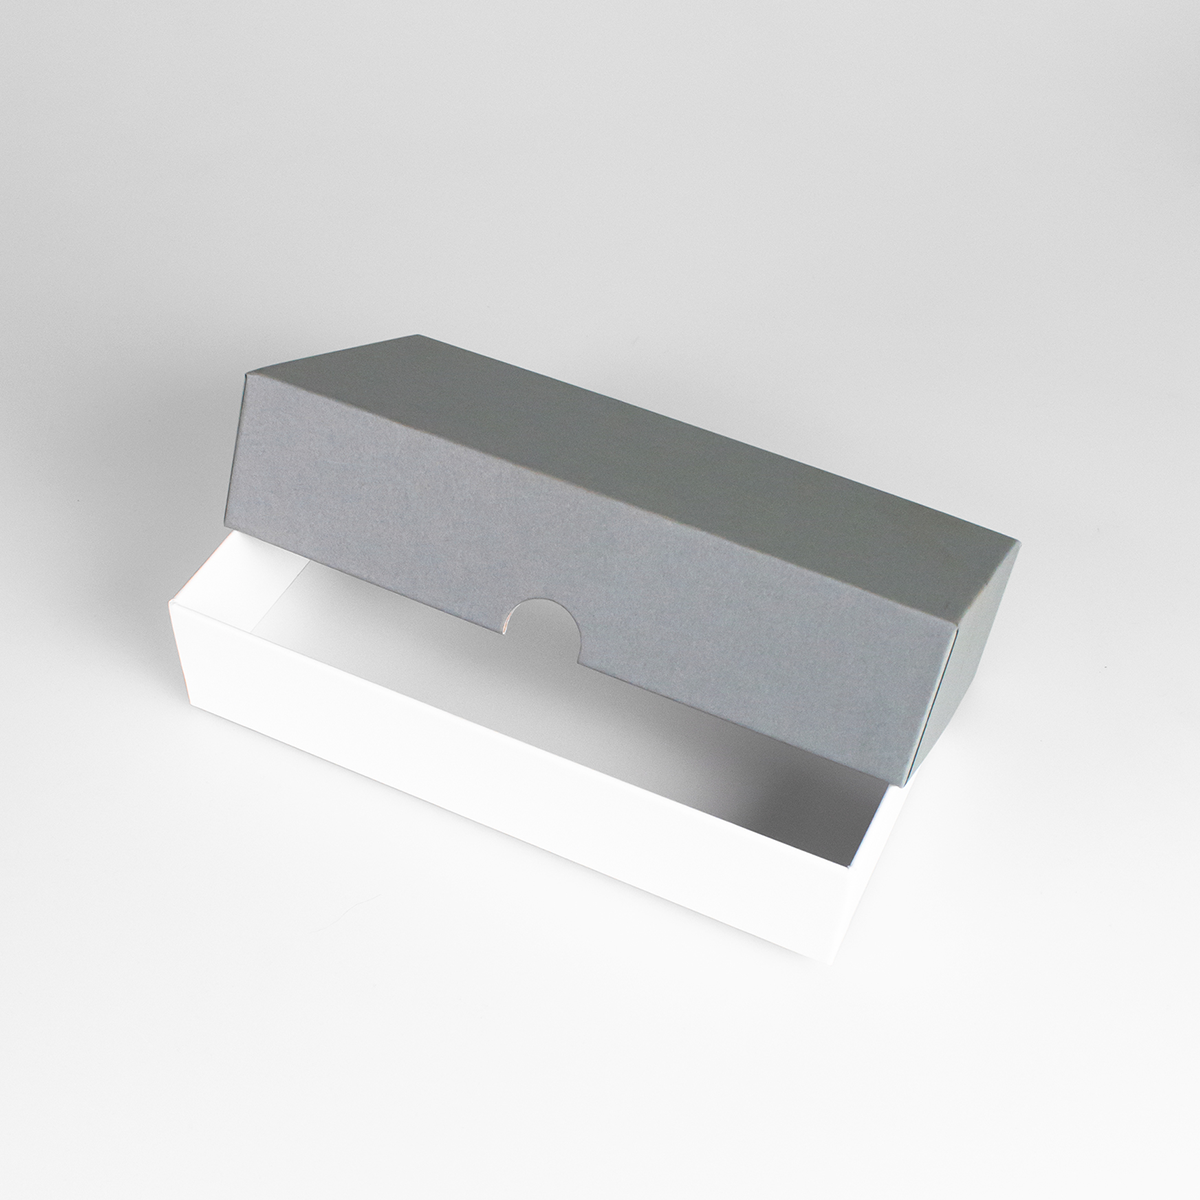 Подарочная коробка крышка-дно, 21.5 x 10.5 x 5 см. "Радуга", серый, белый